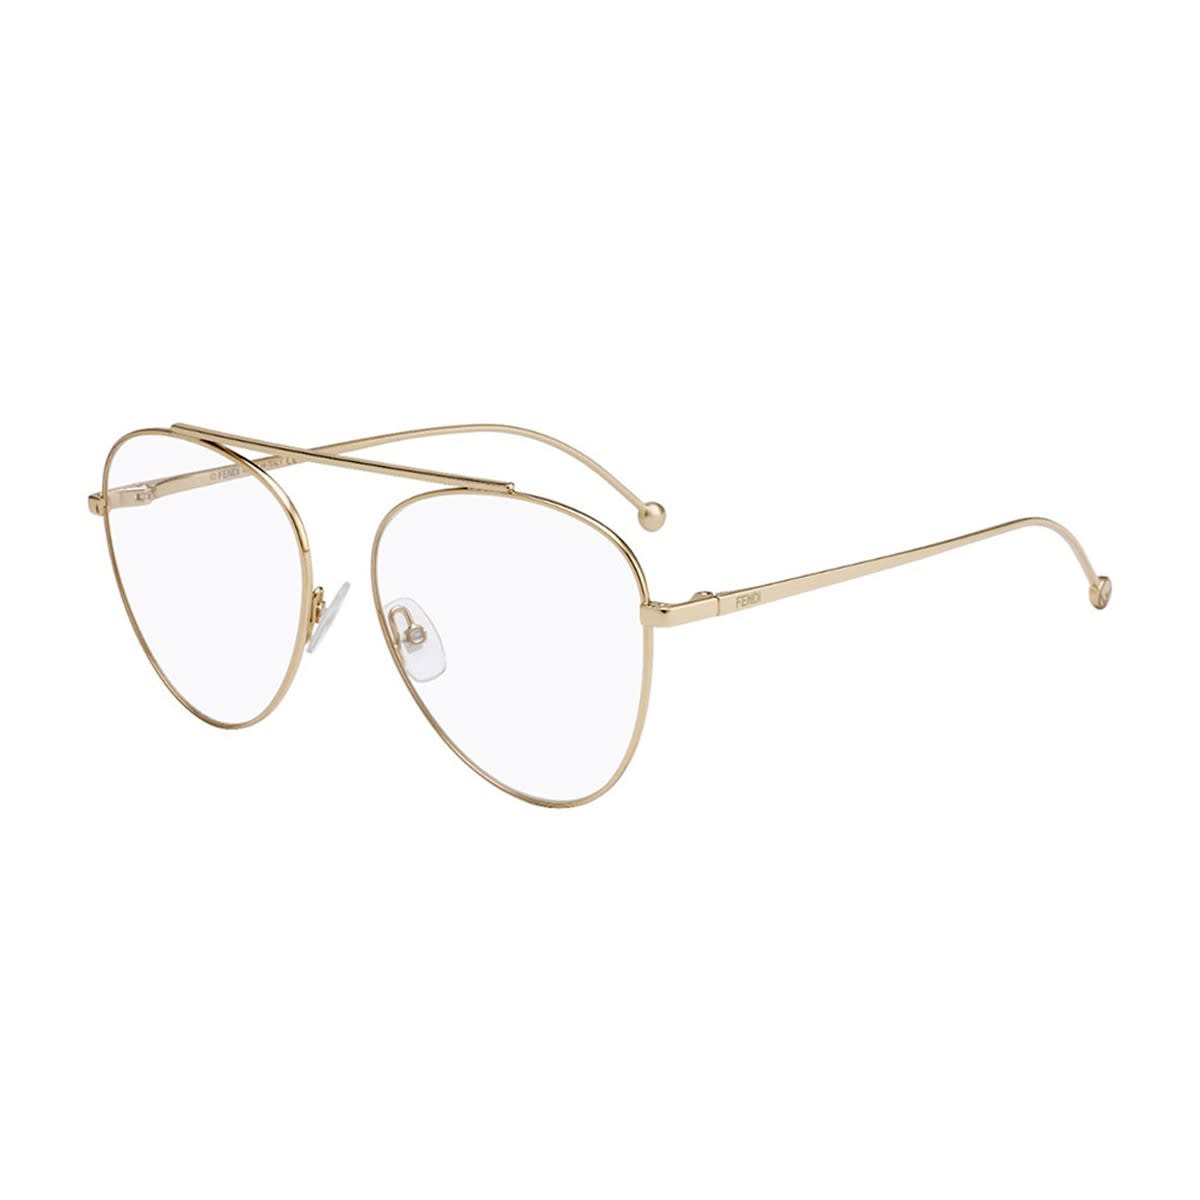 Fendi Ff 0352 Glasses In Oro